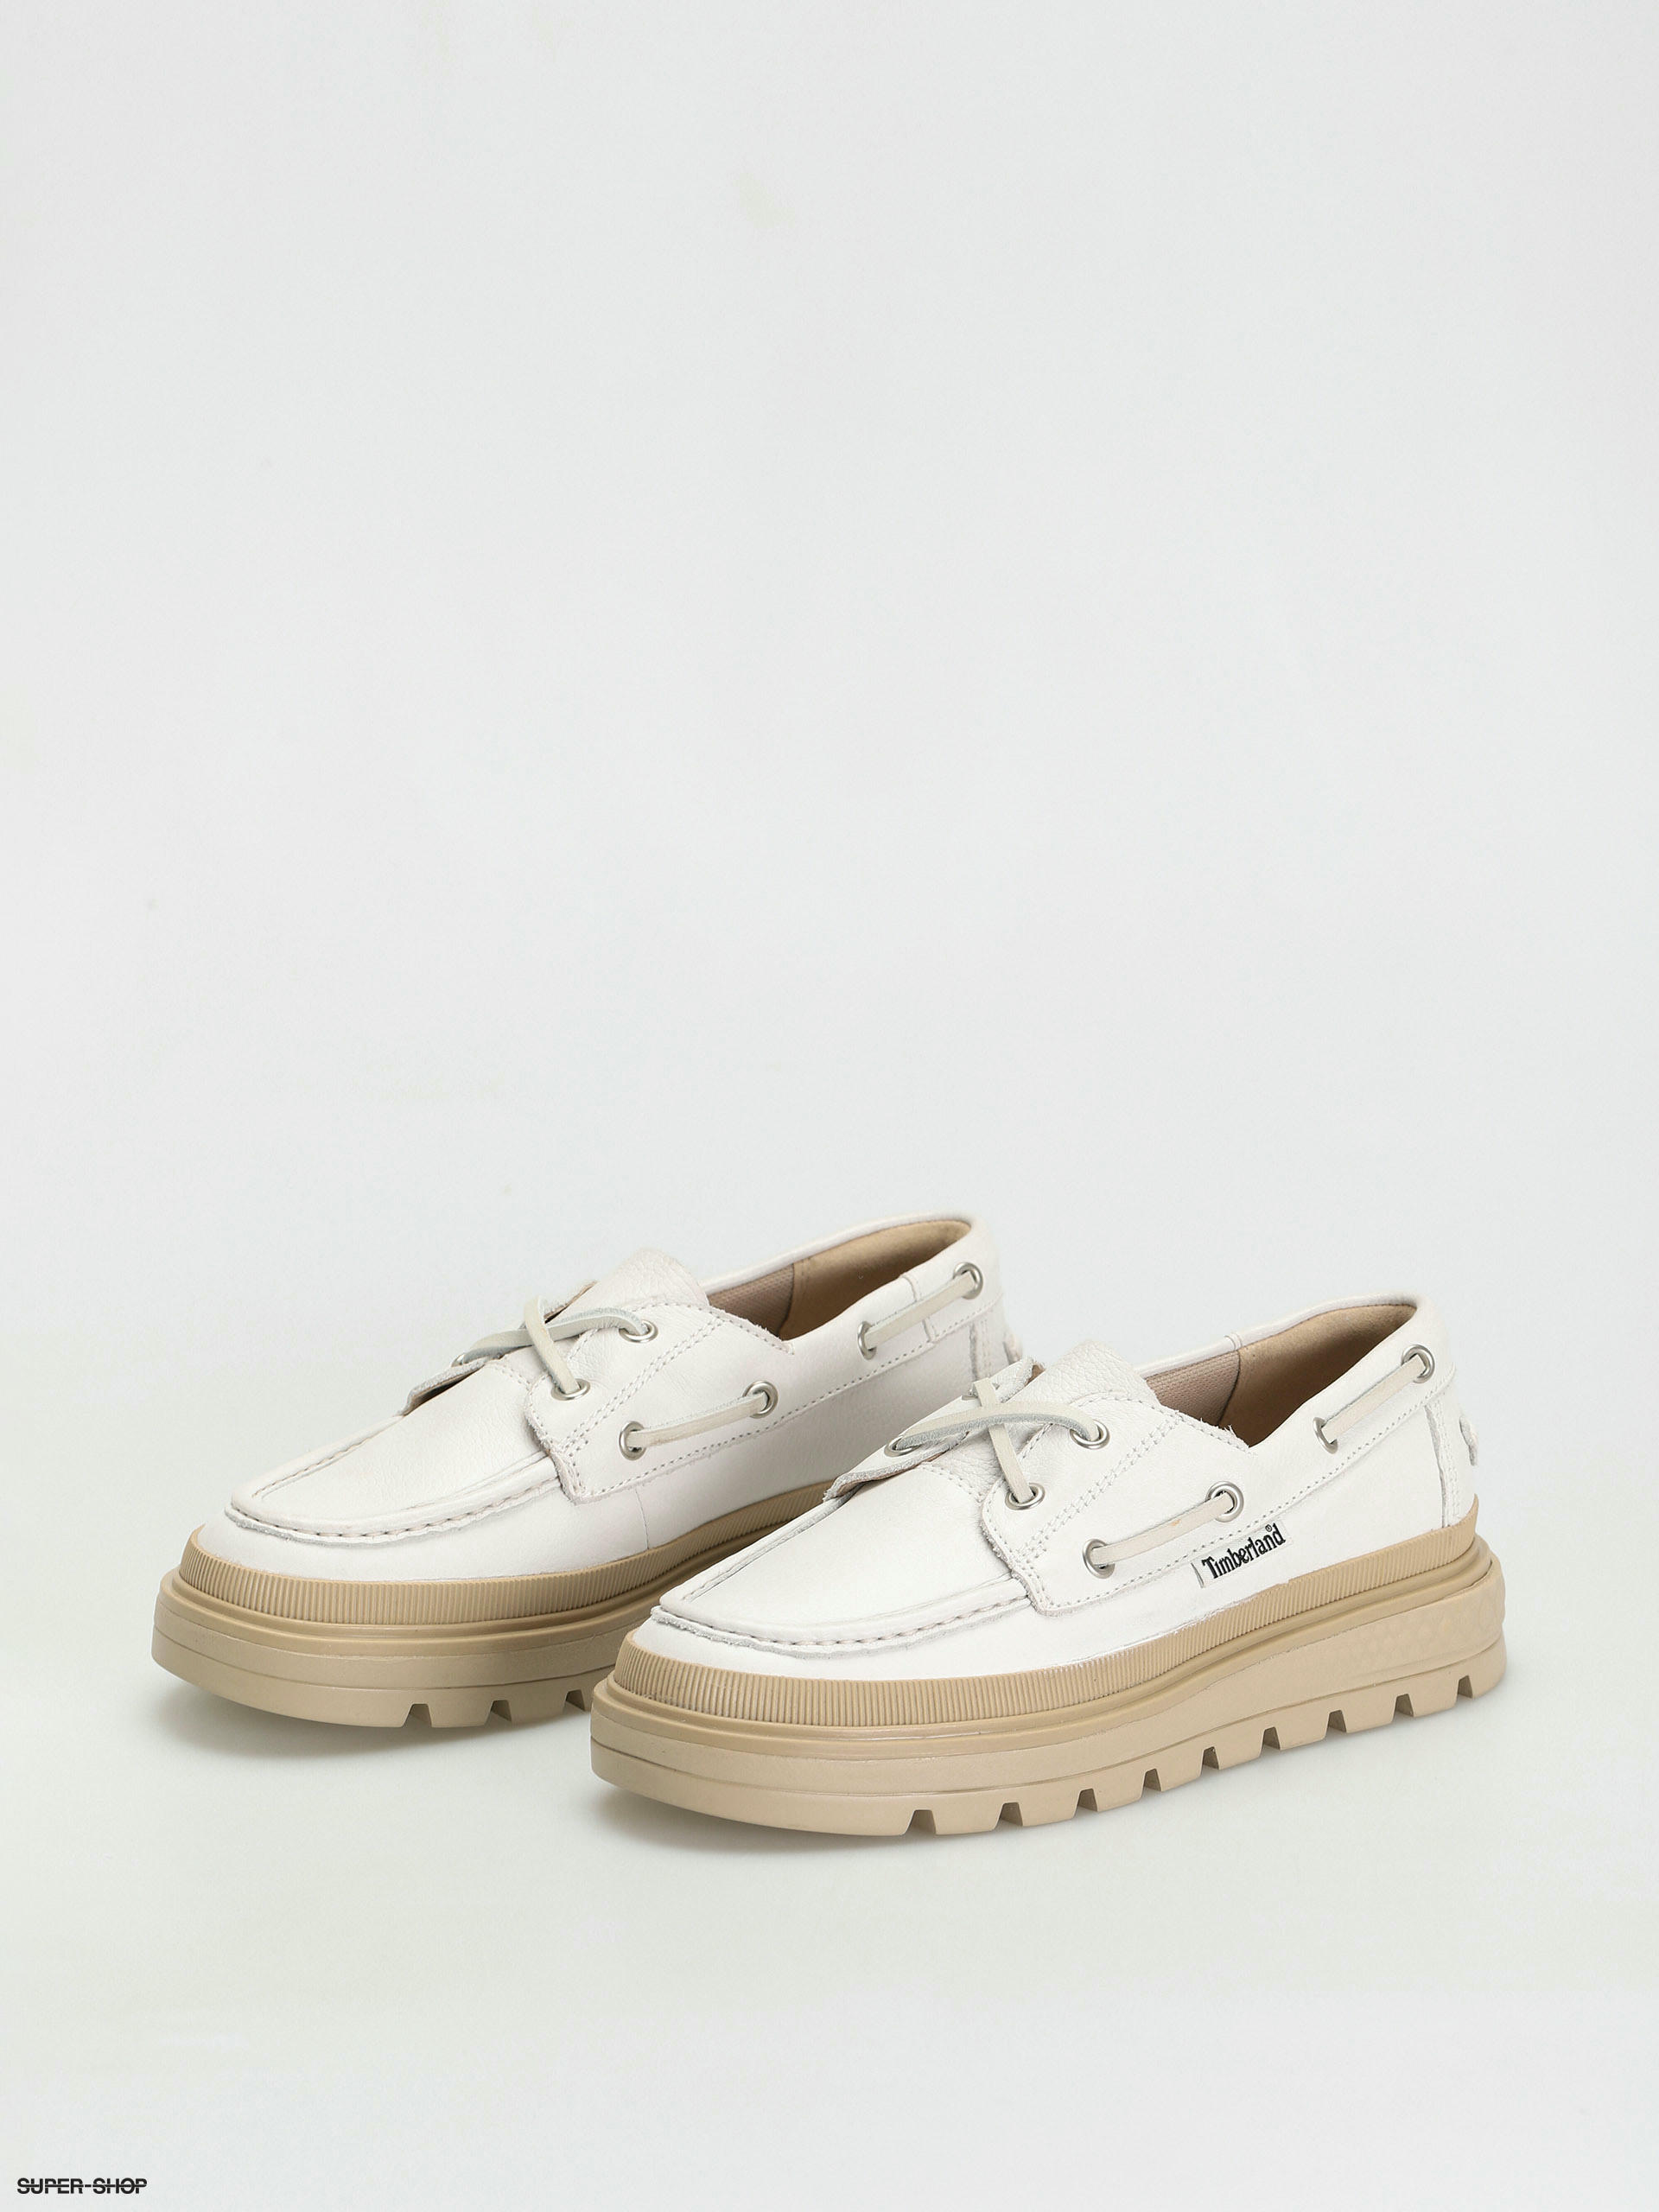 Timberland Womens Ray City Shoes - Size 9 - White Nubuck